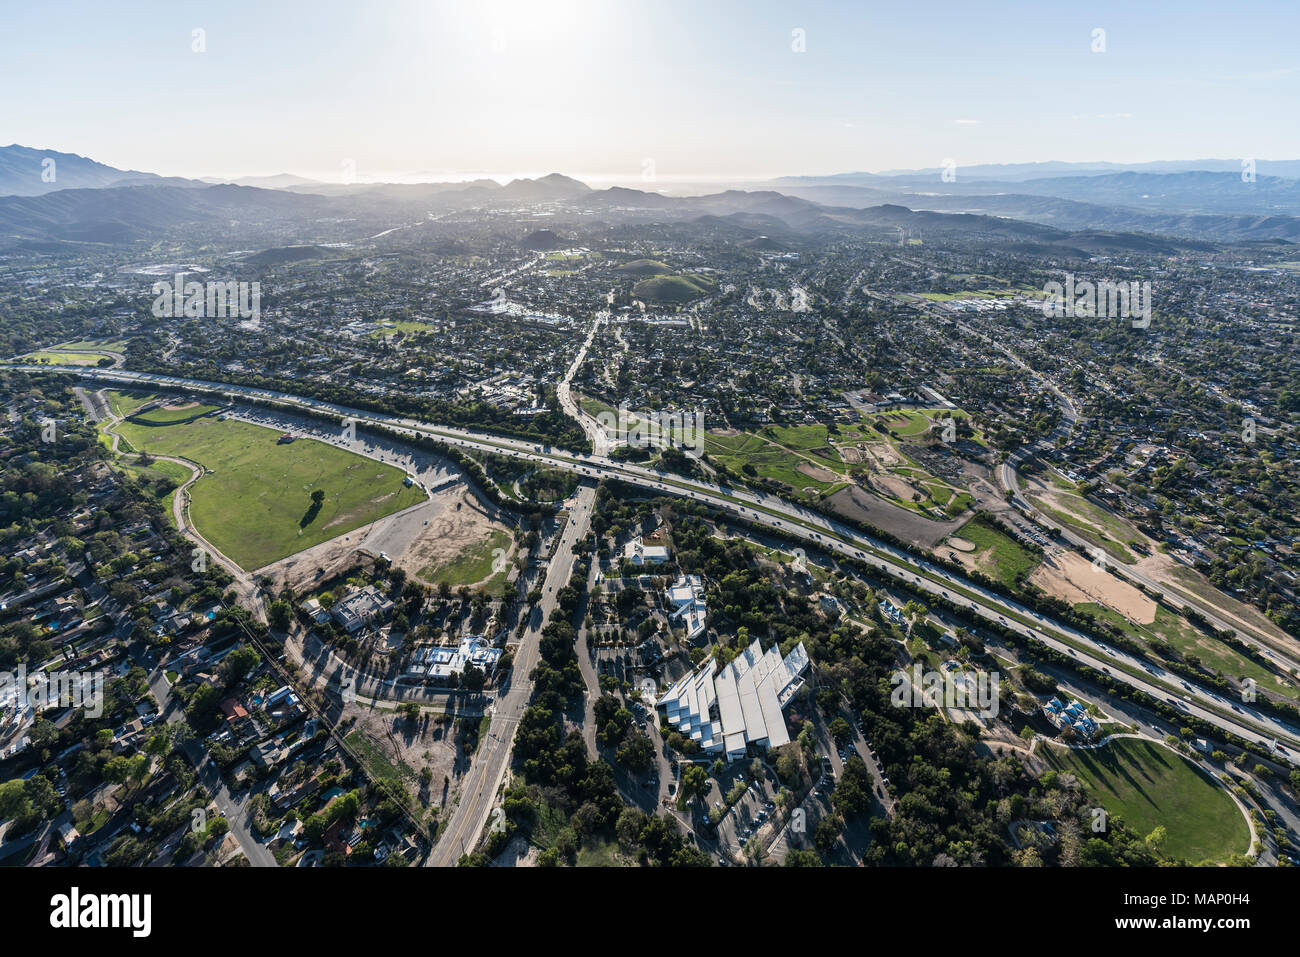 Luftaufnahme von Route 23 Autobahn auf janss Straße in einem Vorort von tausend Eichen in der Nähe von Los Angeles, Kalifornien. Stockfoto